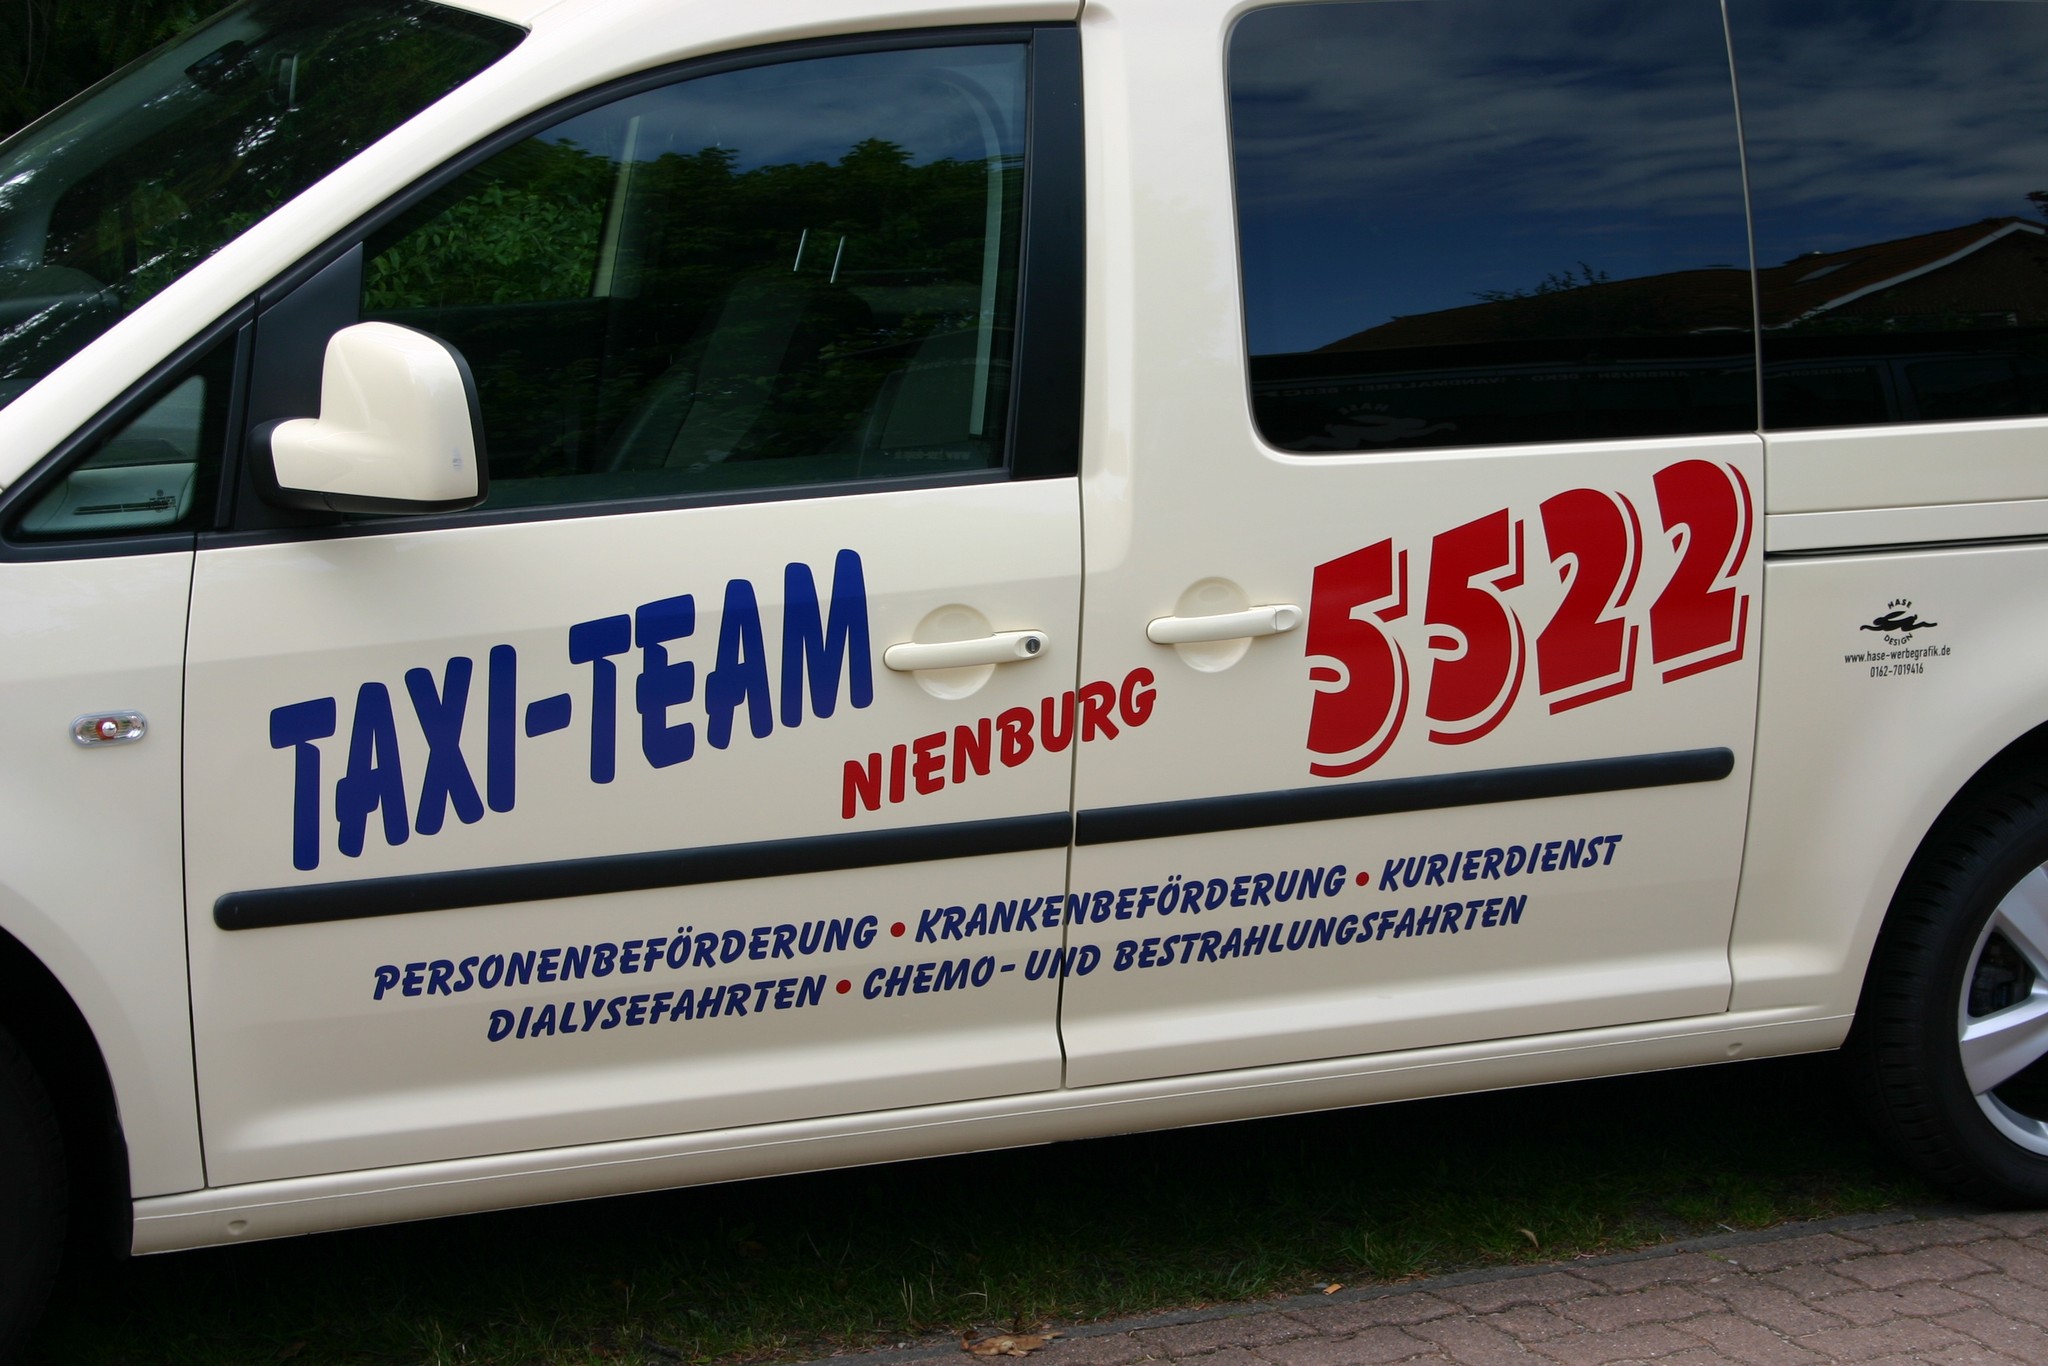 Taxi Team